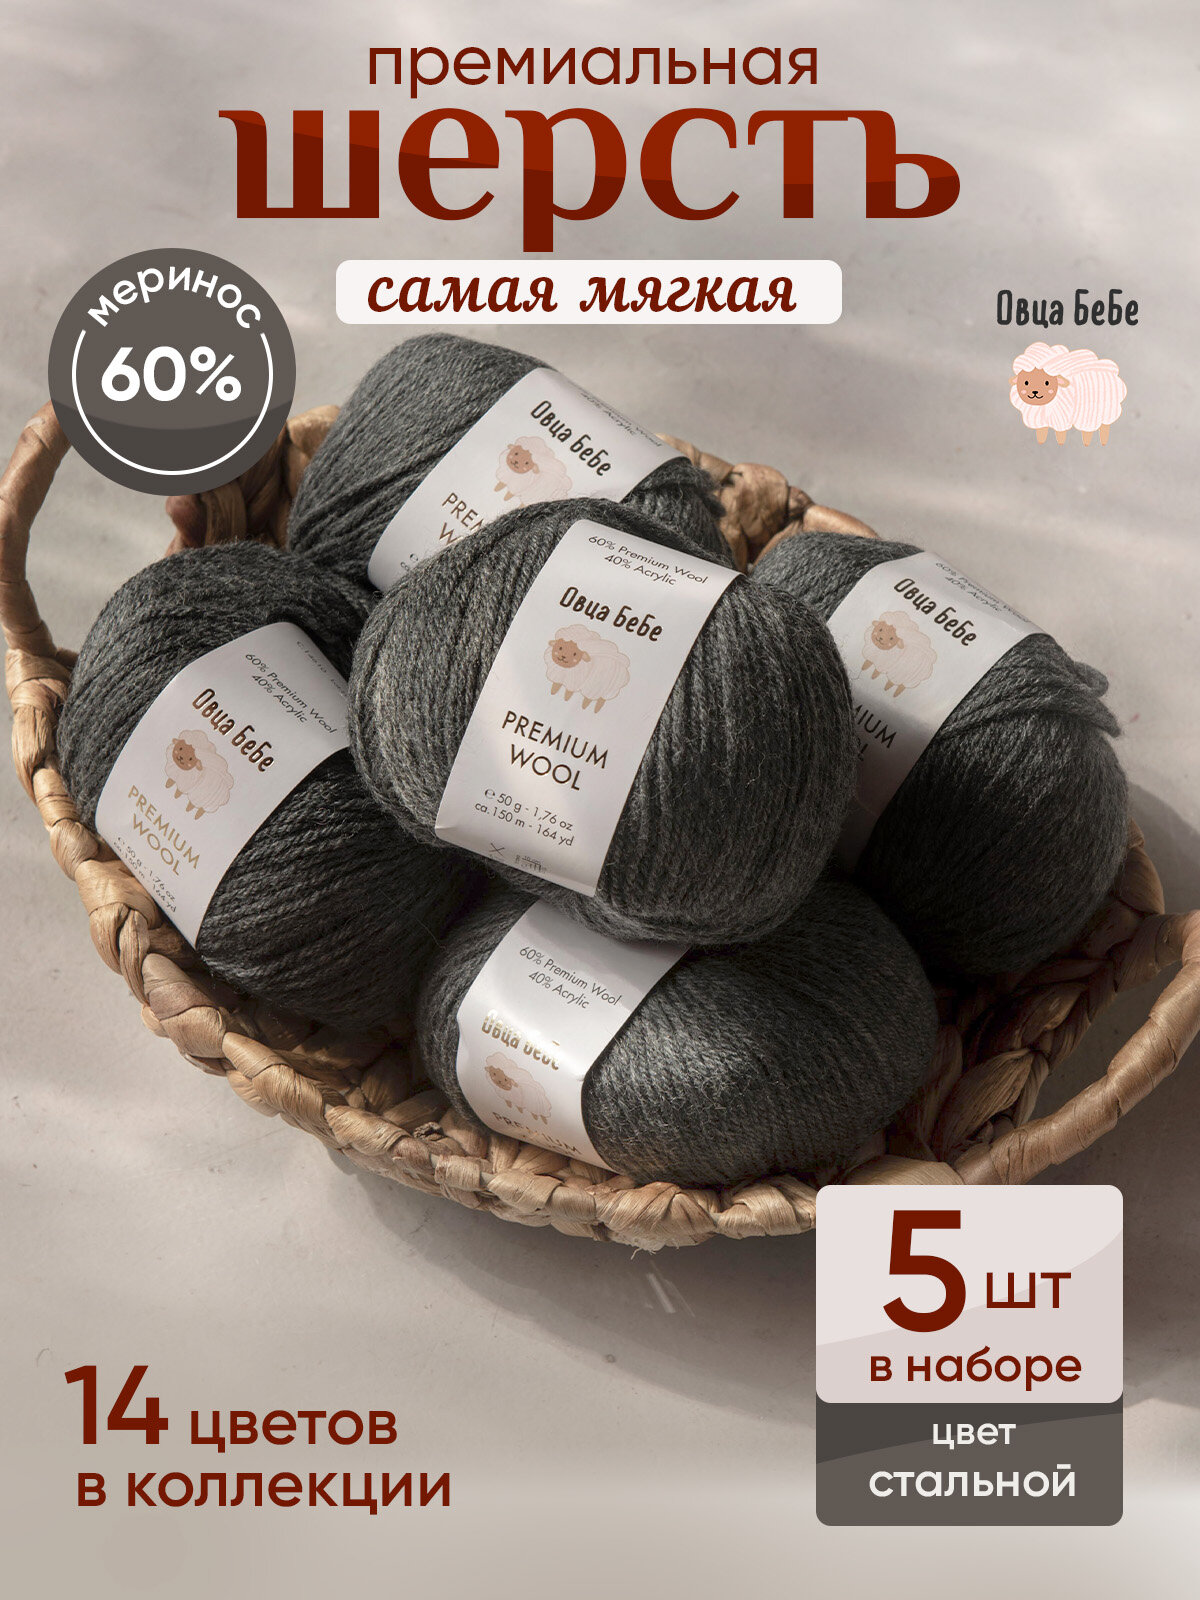 Пряжа для вязания Premium Wool шерсть, цвет стальной, набор 5 мотков